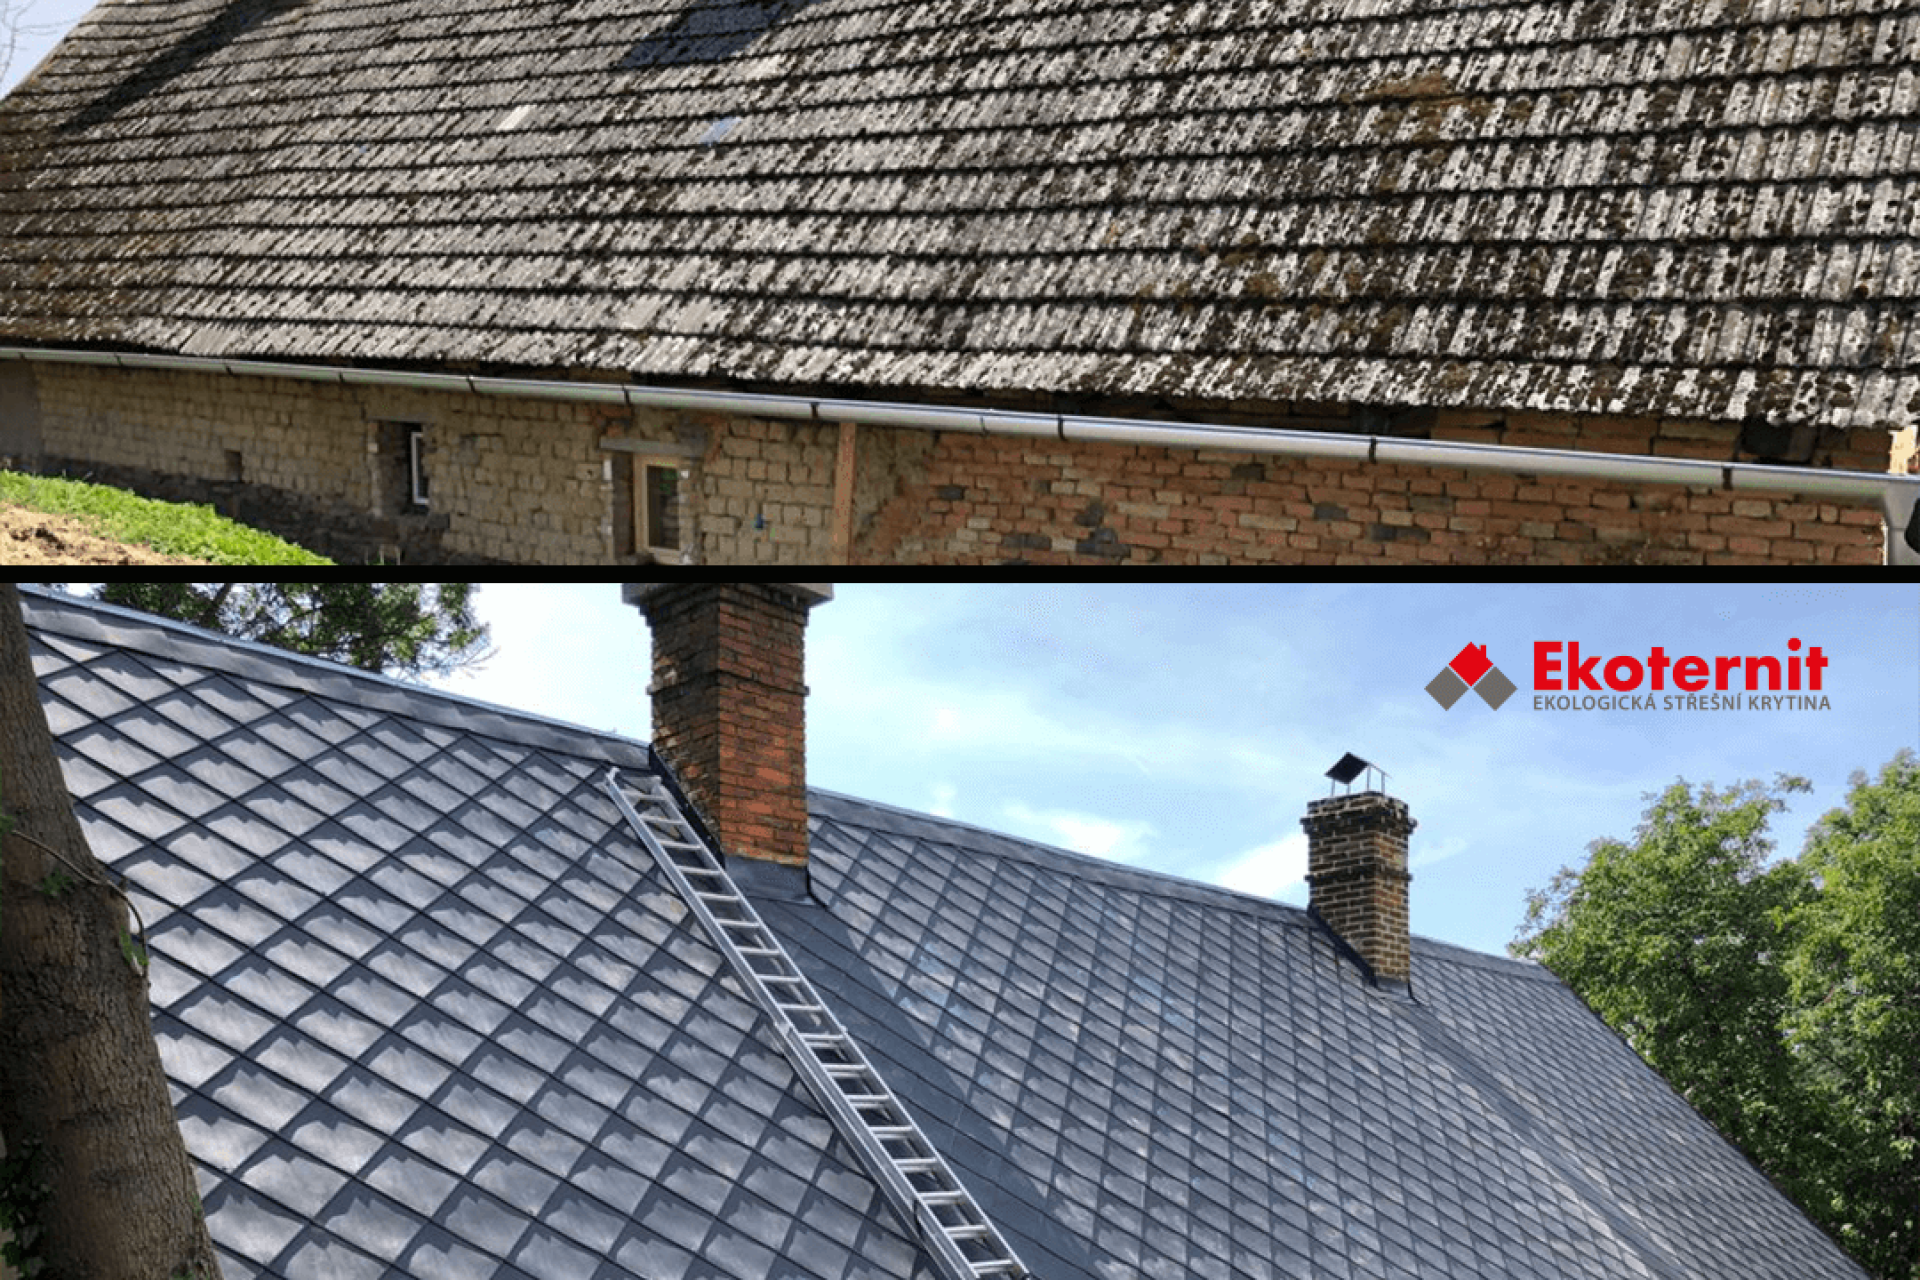 Dachówka Ekoternit nadaje się jako pokrycie dachowe zarówno na nowe, jak i remontowane dachy.